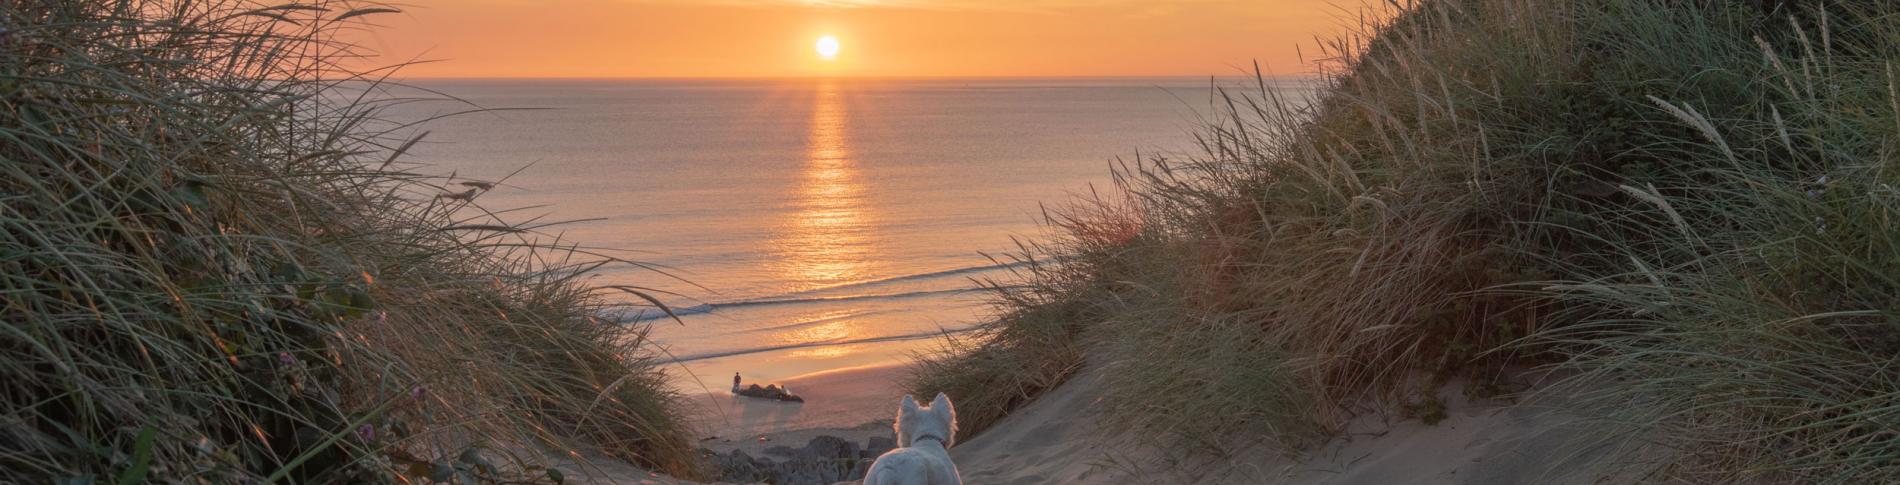 Woolacombe Sands Beach Dunes Sunset North Devon